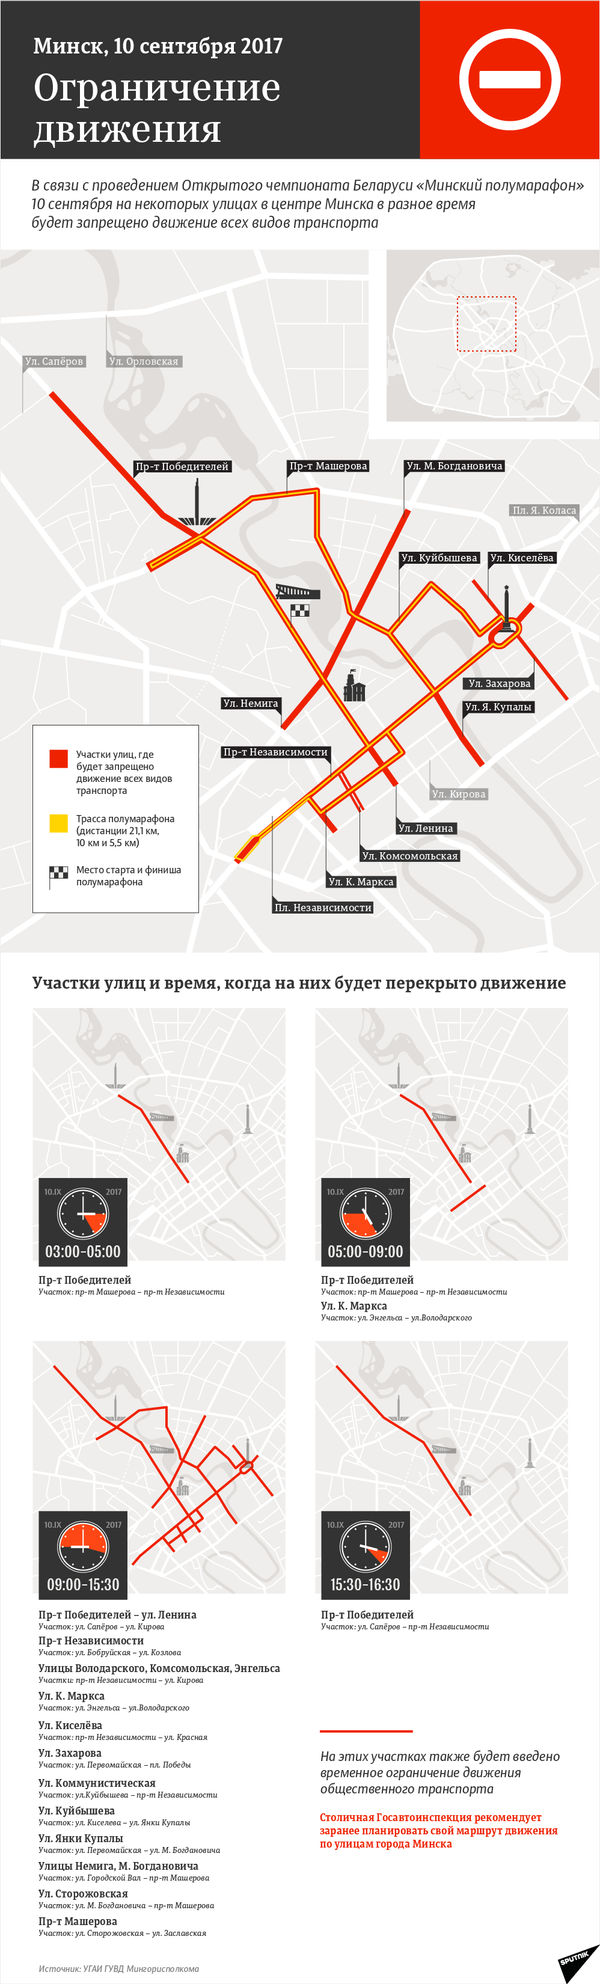 Схема ограничения движения транспорта в Минске 10 сентября 2017 года - инфографика на sputnik.by - Sputnik Беларусь